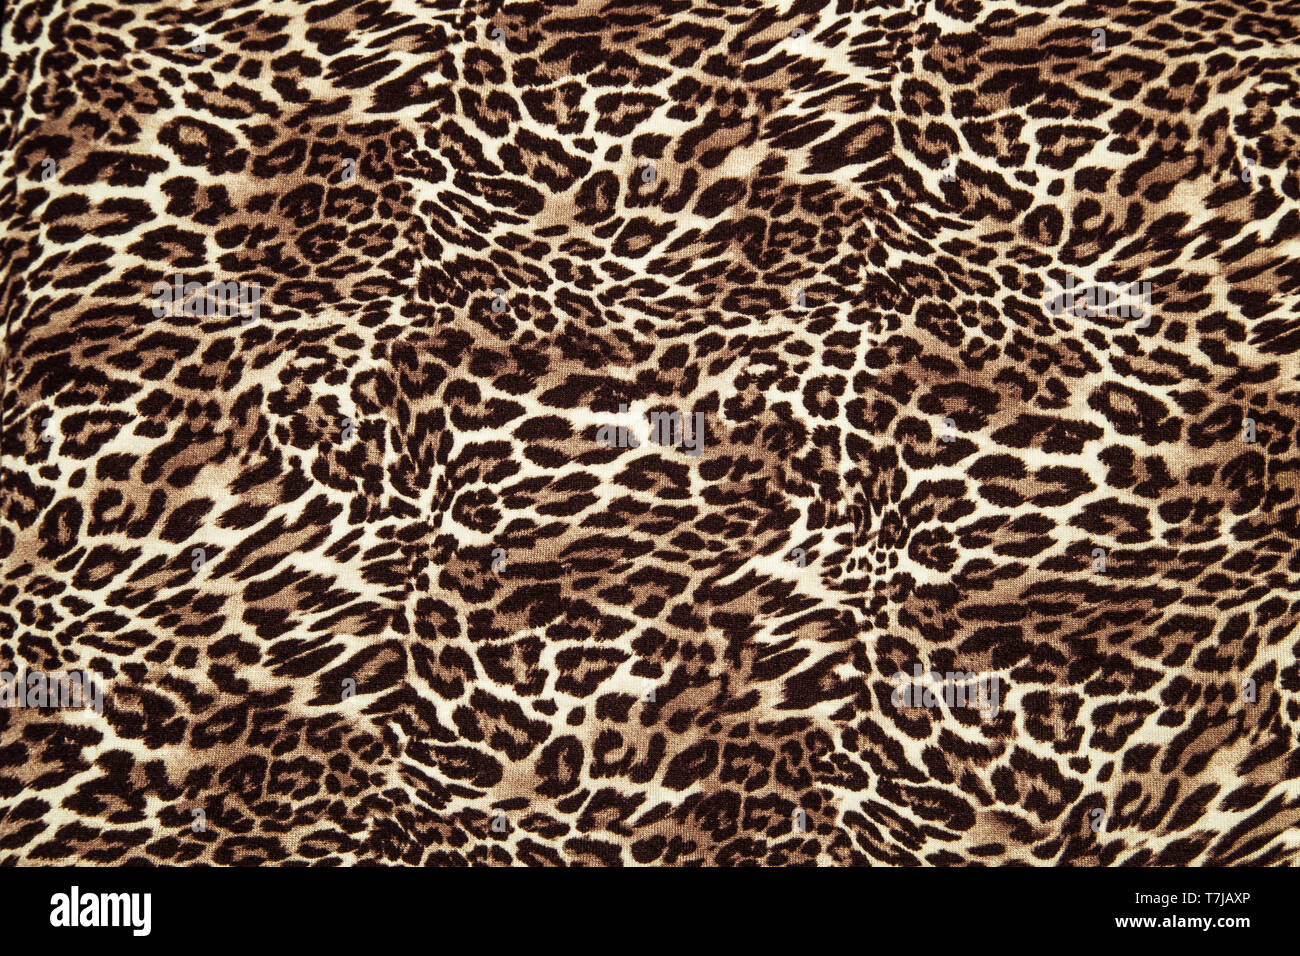 340,889 Leopard Print Images, Stock Photos, 3D objects, & Vectors